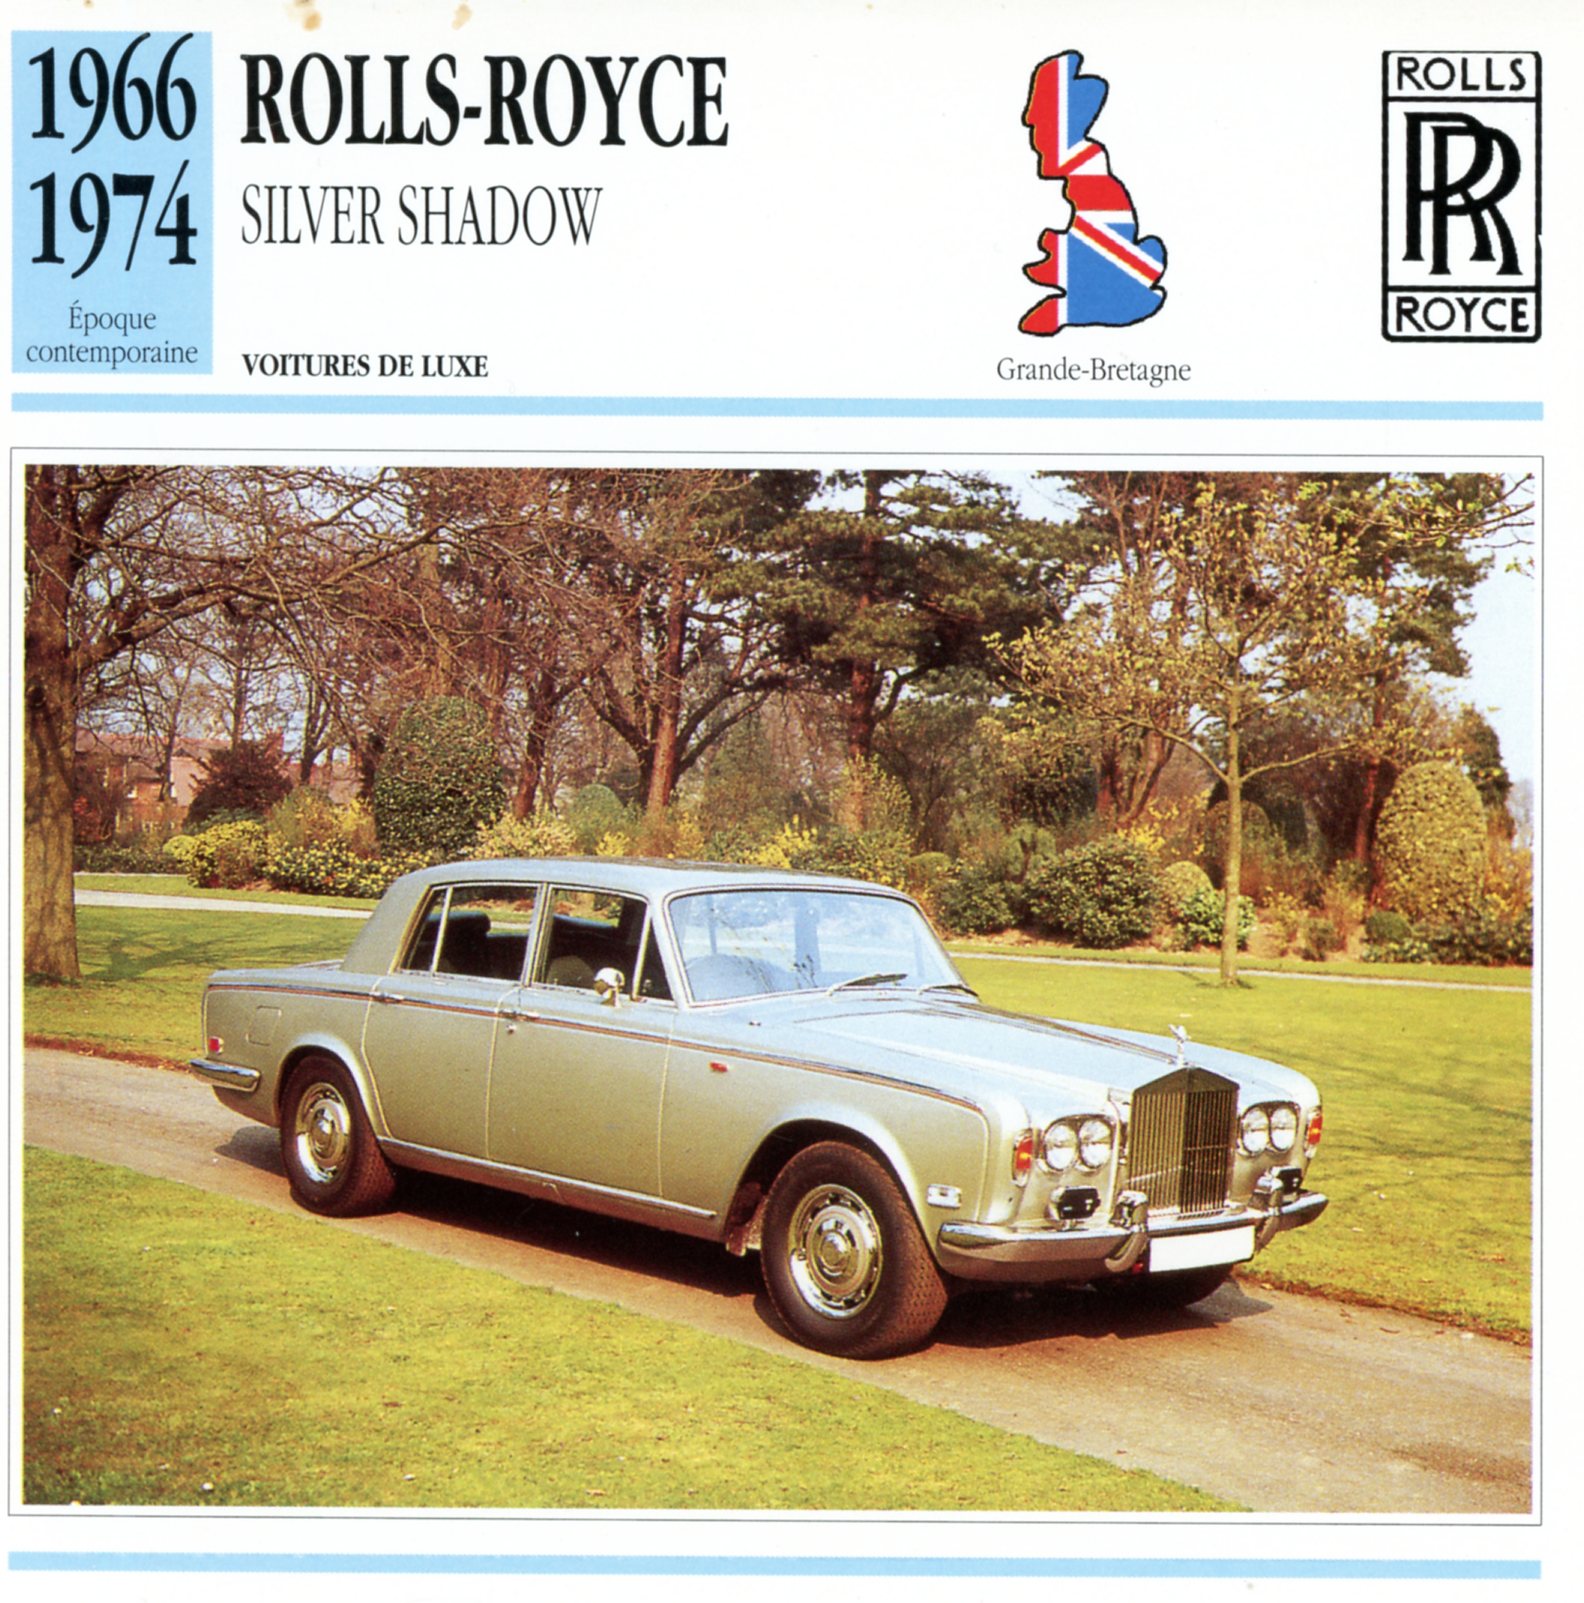 ROLLS-ROYCE SILVER SHADOW 1966 1974 - FICHE AUTO CARACTÉRISTIQUES